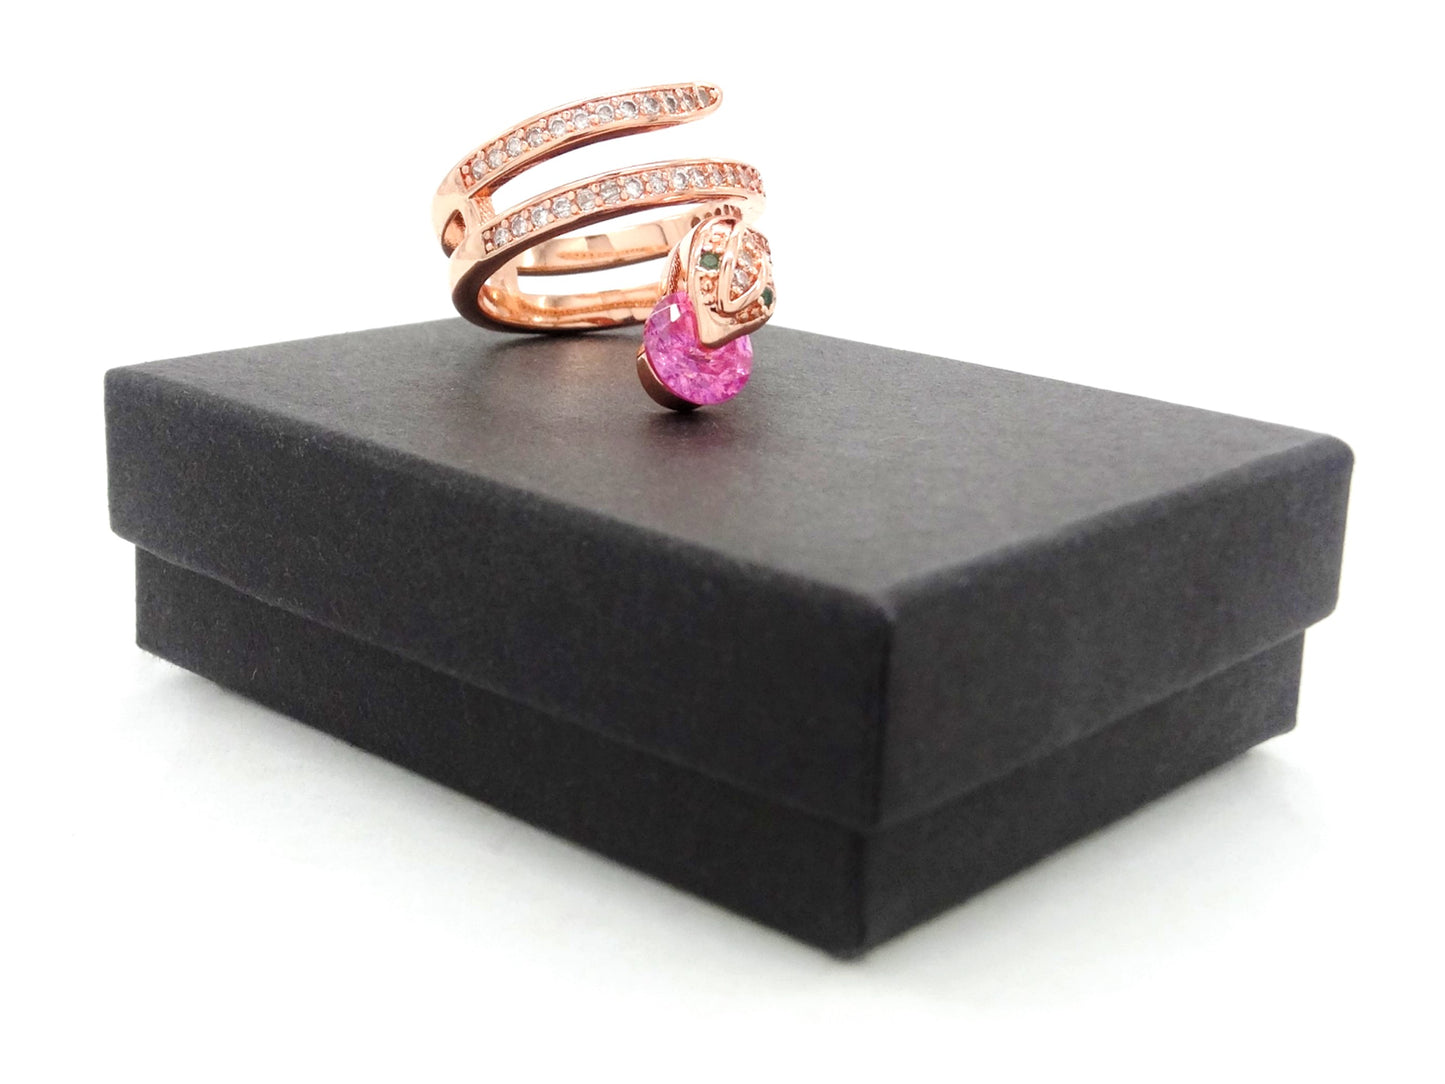 Rose gold snake ring with pink gemstone GIFT BOX